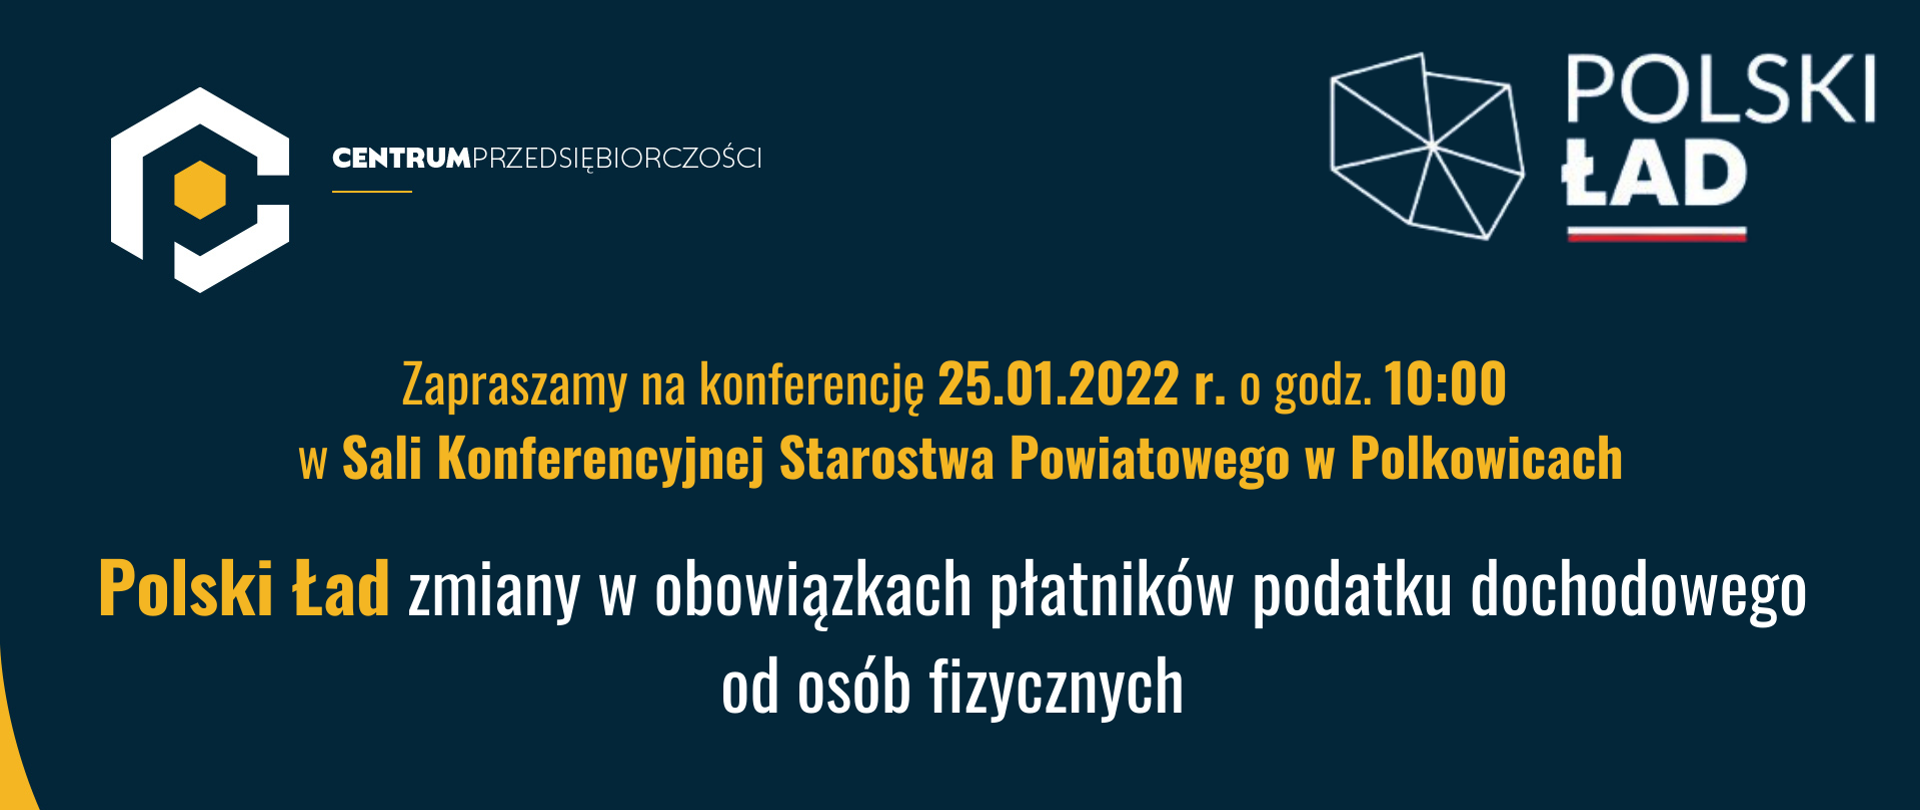 Plakat z informacją o spotkaniu na temat nowego programu podatkowego Polski Ład, które odbędzie się 25 stycznia 2022 r. w Sali Konferencyjnej Starostwa Powiatowego w Polkowicach